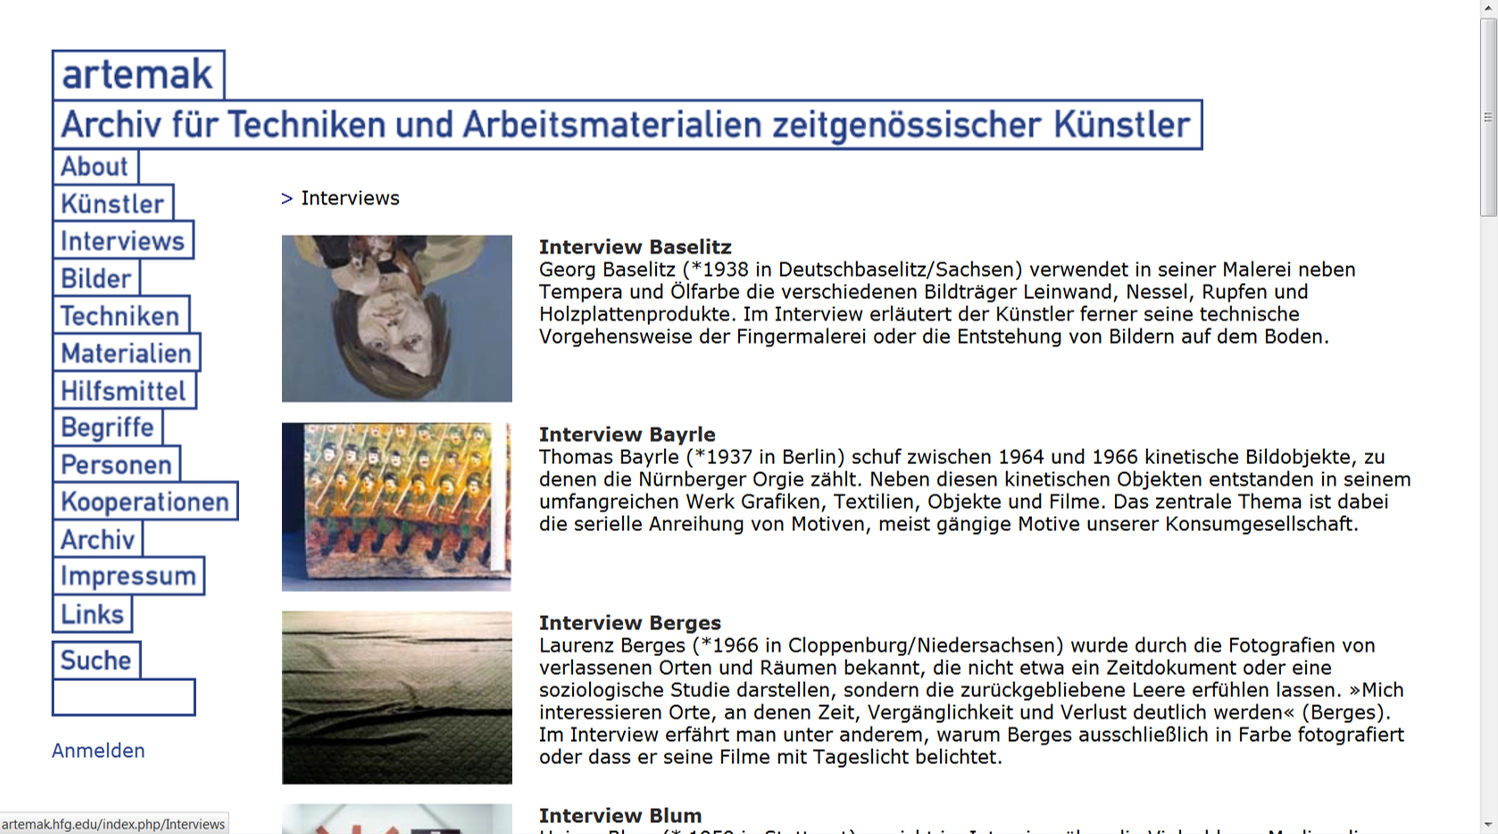 Screenshot of the artemak.de web platform